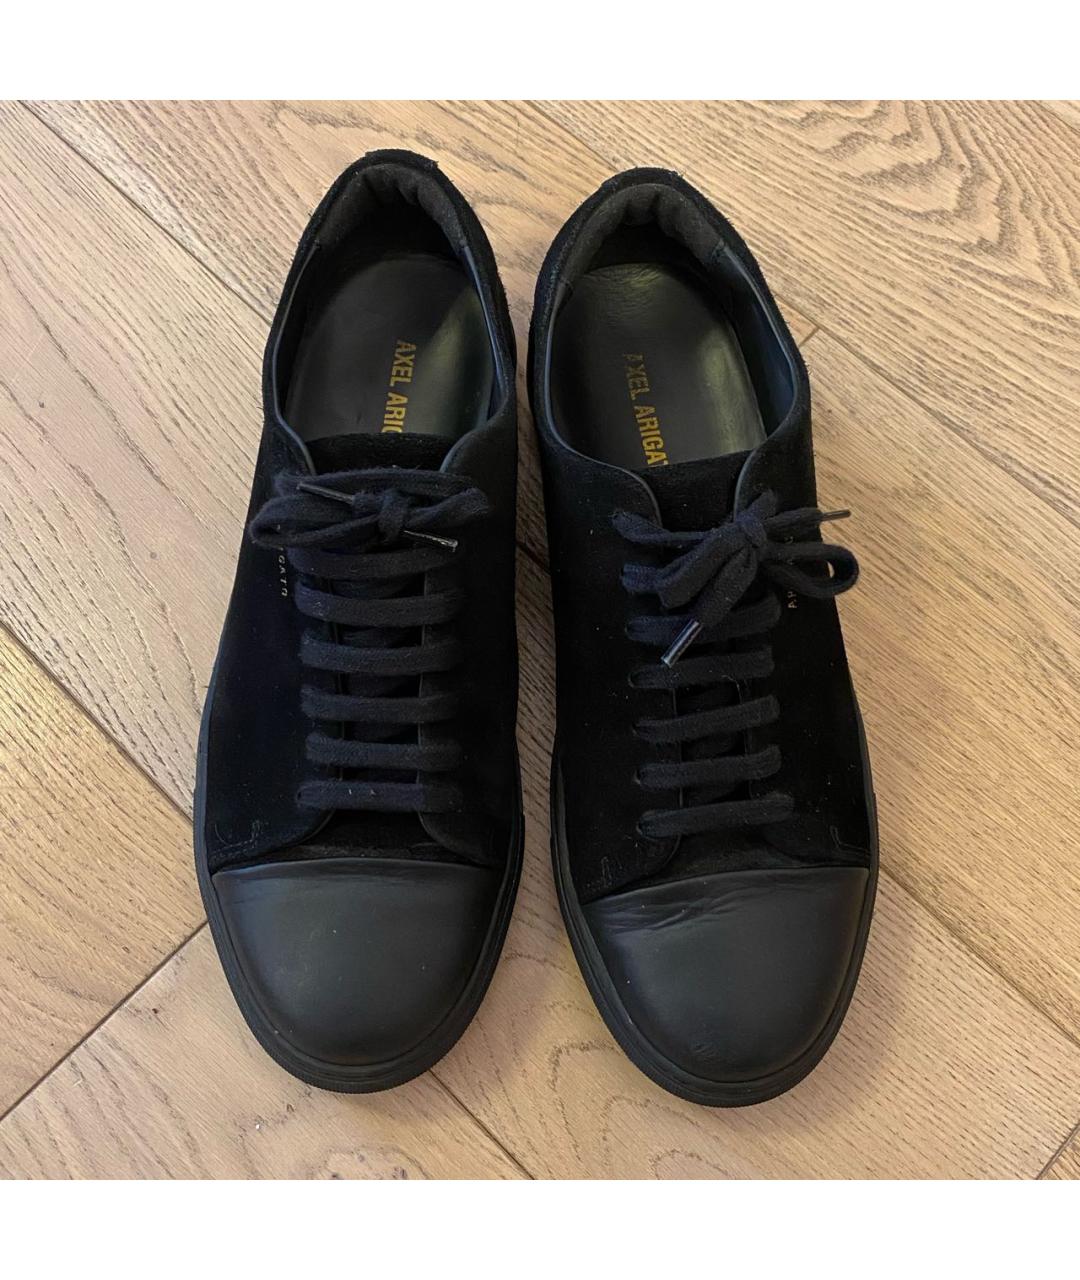 AXEL ARIGATO Черные замшевые низкие кроссовки / кеды, фото 2